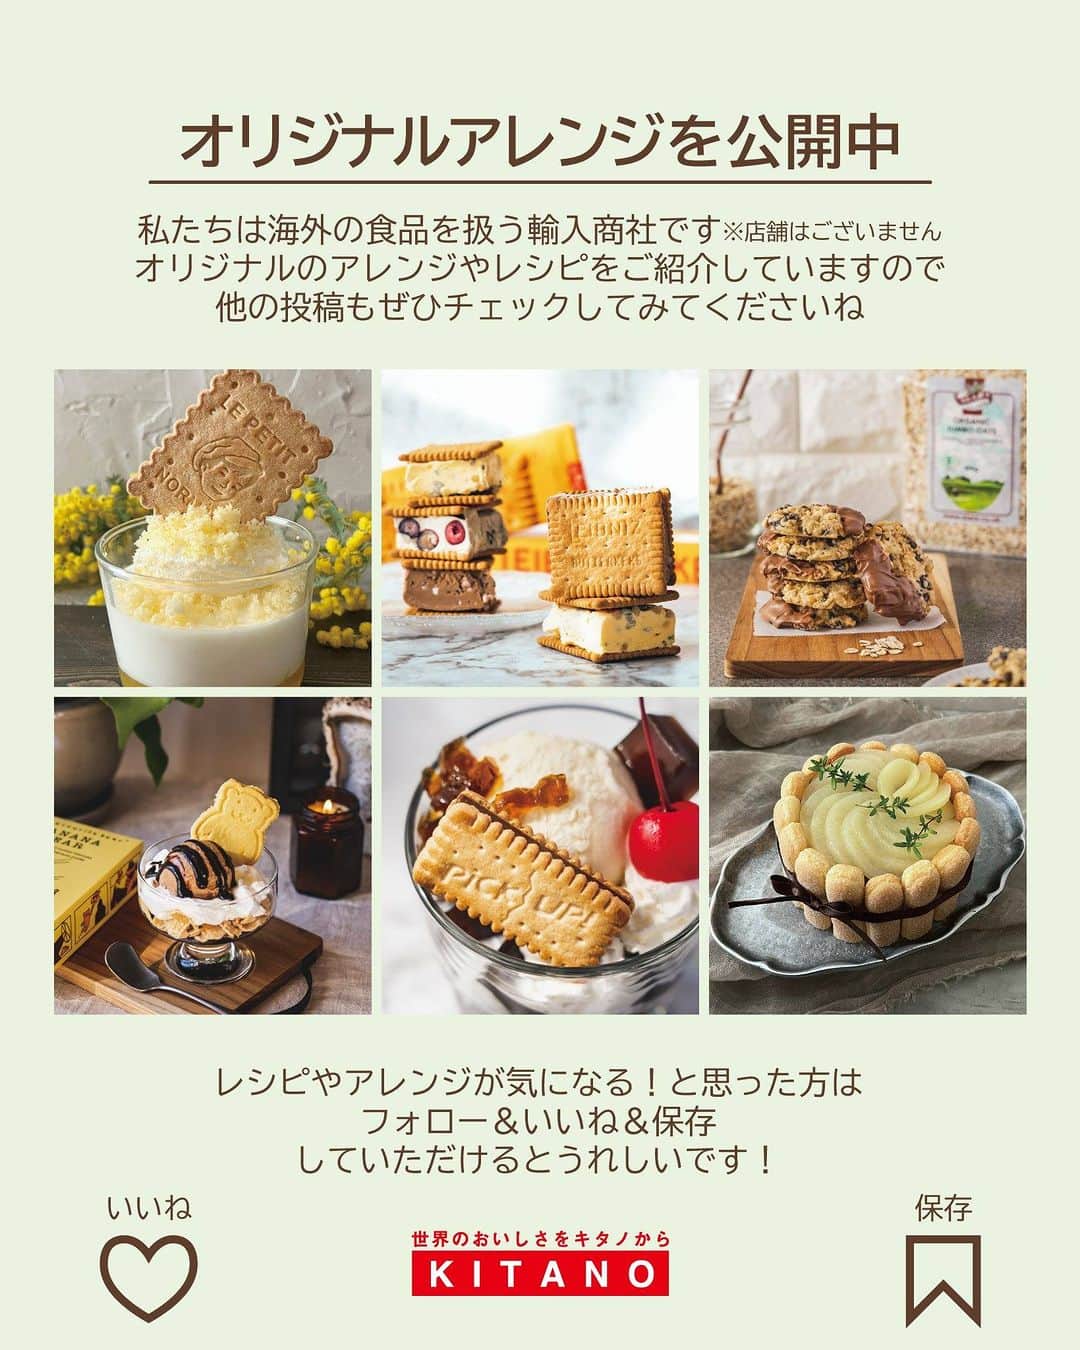 キタノ商事株式会社さんのインスタグラム写真 - (キタノ商事株式会社Instagram)「食べてみたい！と思ったらコメント欄に「🦁」作ってみたい！と思ったら「💛」で教えていただけると嬉しいです♡  🦁お子さまと作る簡単おやつレシピ🦁 🇩🇪バールセン[ズービスケット バター/ココア] ズービスケットは1966年発売以来のドイツのスーパーマーケットでは定番のビスケット。日本でも、こどもの頃に食べていた、お子さんが小さいころによく買っていたといったお声をいただく、まさに世代を越えたロングセラーアイテムです。  ドイツ生まれのズービスケットは、動物ひとつひとつの表情や形のディテールがしっかりとしていて、小さなお子さまでもイメージがしやすいのも魅力。よくよく観察していただくとまた違った楽しみ方ができるので、ぜひ一度、どんな動物が入っているのかチェックしてみてくださいね。  今回ご紹介するレシピはクリームチーズと泡立てた生クリーム、ドライフルーツを混ぜて冷やすだけなので、5分の工程でできる超簡単おやつ。混ぜて冷やすだけなのでお子さまとのおやつ作りにもおすすめです。ぜひ試してみてくださいね。  🦁 🇩🇪バールセン[ライプニッツ ケックス] ズービスケットのひとくちチーズケーキ  〈所要時間〉 約5分 ※冷蔵庫で冷やし固める時間を除きます。 ※成型する時間を除きます。  〈材料・2×3cm角型　約16〜18個分〉 ・クリームチーズ 200g ・A：生クリーム 50g、グラニュー糖 20g ・B：ドライマンゴー 30g、ドライクランベリー 15g ・ズービスケット バター/ココア 計16～18枚  〈事前準備〉 ・クリームチーズを室温に戻しておく。 ・Bは5mm角程度に刻んでから、熱湯でさっと茹でてザルにあげ、水気を切っておく。  〈作り方〉 1.クリームチーズをゴムベラでクリーム状に練り混ぜる。  2.Aを別のボウルで10分立てまで泡立てる。  3.1に2とBを加えてムラなく混ぜ合わせ、冷蔵庫で成型できる固さまで冷やし固める。  4.3を広げたラップに移し、4×3cm程度の角柱型(18cm×2本)に整え、冷凍庫で1時間冷やし固める。  5.4の4面を温めた包丁でカットし、2×3cm程度に切り分け、ズービスケットをトッピングする。 ・ ・ 混ぜて冷やし固めるだけの、お手軽ひとくちチーズケーキ。ドライフルーツの甘酸っぱさとサクサクのズービスケットの組み合わせが◎。ついつい手が出るおいしさです。  💛 ＼食べてみたらぜひ教えてください／ 素敵な投稿をこちらのアカウントではご紹介させていただいております。 @kitano_kk と #バールセン #ズービスケット のタグをつけて投稿してみてくださいね。ストーリーズでもフィードでもどちらでも🙆です♡みなさまの投稿をお待ちしております。  🦁 【販売店情報】 「ヨドバシ.com」にて🇩🇪バールセン［ズービスケット]をお取り扱いいただいております。「バールセン」でチェックしてみてくださいね。 https://www.yodobashi.com/ ※在庫状況は変動するため、在庫がない場合もございます。予めご了承ください。  💛 --------- 🇩🇪バールセン [ズービスケット] ドイツNo.1ビスケットブランド バールセンはドイツ語のビスケットを表す言葉[Keks(ケックス)]を生み出した、世界のビスケットの歴史にも名を残すブランドです。バールセンの動物ビスケット[ズービスケット]は、1966年に生まれて以来50年以上のロングセラー。ドイツで知らない人はいないバールセンですが、ドイツのみならず世界中のこどもたちのおやつタイムで楽しまれています。  [ズービスケット バター] サイ、カメ、ヒツジ、ライオンなどなどかわいらしい動物たちと出合えるバターの香りとやさしい甘さのビスケットです。(バター12％使用)  [ズービスケット ココア] カバ、トラ、ワニなどなどかわいらしい動物たちと出合えるやさしい甘さのココアビスケットです。(バター12％使用) --------- 🦁  その他のバールセンのレシピは過去の投稿でもご覧いただけます。ストーリーズの「バールセンのアレンジレシピ」から投稿にジャンプいただくか、プロフィールのリンクにある当社ウェブサイト内「アレンジレシピ」でもご覧いただけます。  #バールセン #ズービスケット #ズービスケットバター #ズービスケットココア #ドイツ #キタノ商事 #世界のおいしさをキタノから ・ ・ ・ ・ ・ #輸入菓子 #ビスケット #クッキー #動物ビスケット #おうちカフェ #こどもおやつ #レシピあり #チーズケーキ #簡単スイーツレシピ #スワイプレシピ #おやつレシピ #おやつ #お菓子作り #お菓子作り好きな人と繋がりたい #簡単スイーツ #簡単おやつ #お菓子レシピ #おやつの時間 #手作りおやつ #子供のおやつ #どうぶつビスケット」7月12日 8時00分 - kitano_kk